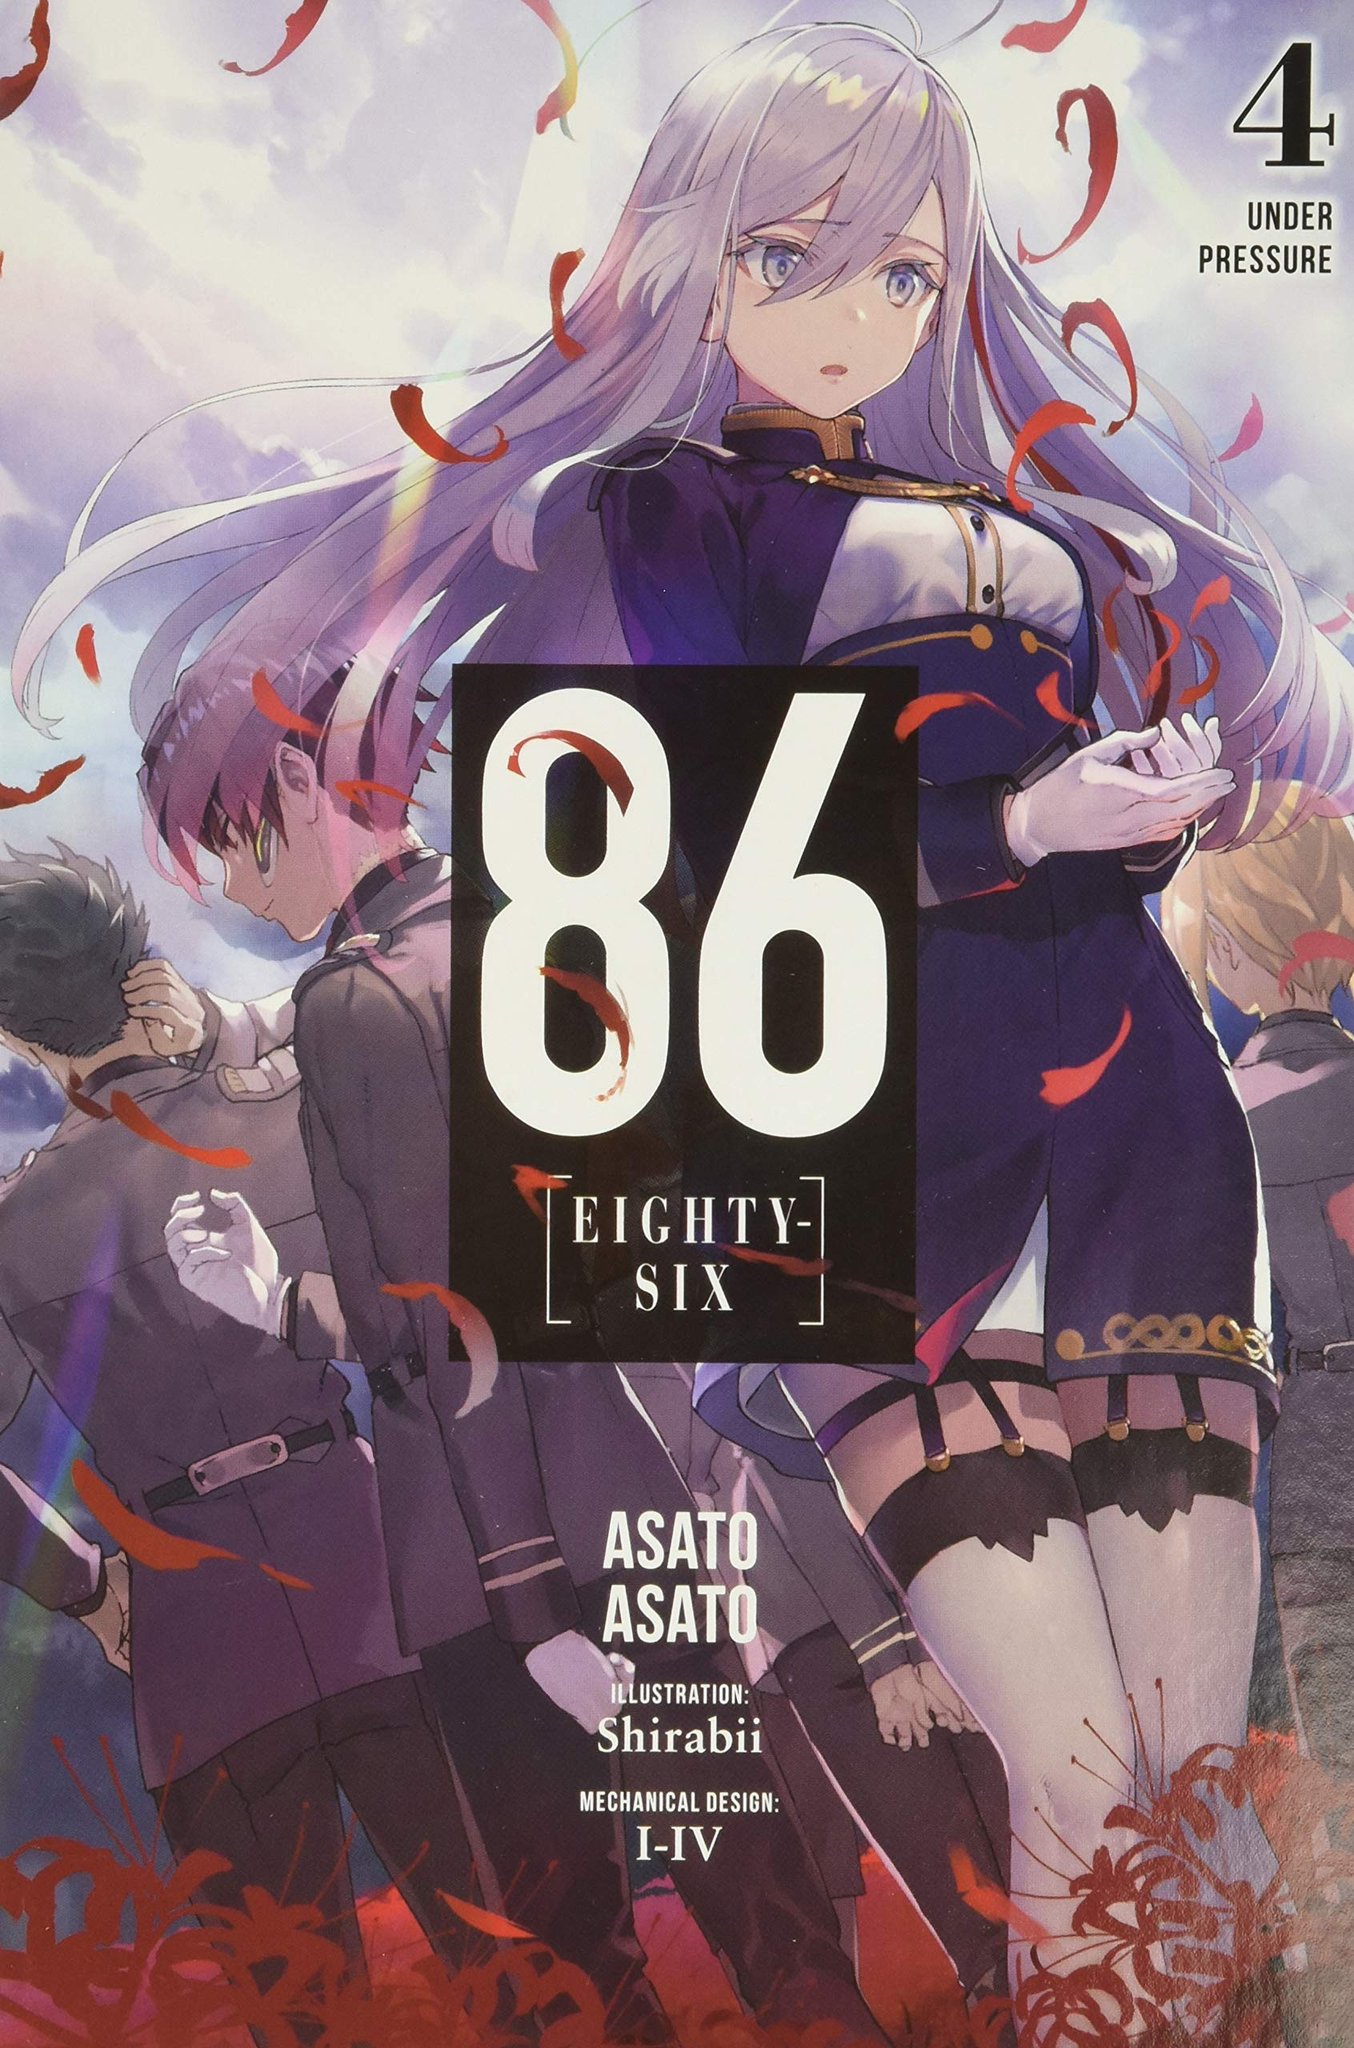 Animes In Japan 🎄 on X: Uma pequena correção, a primeira temporada do  anime 86: Eighty Six adaptou até o final do volume 3 da light novel,  vocês podem começar a ler